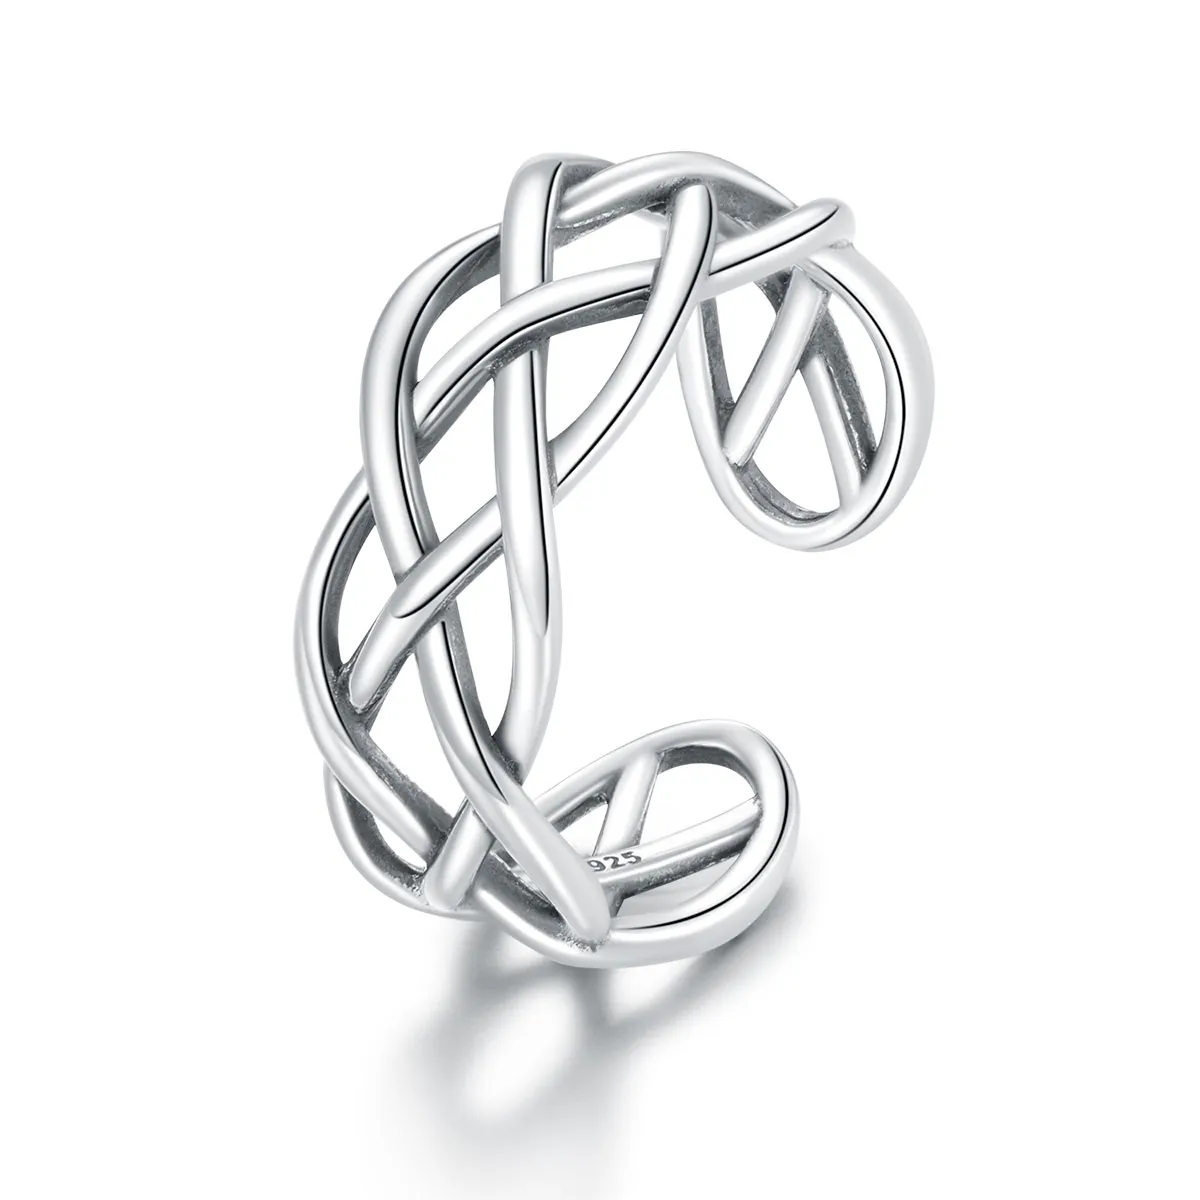 Pandora Style Silver Woven Texture Open Ring - SCR675